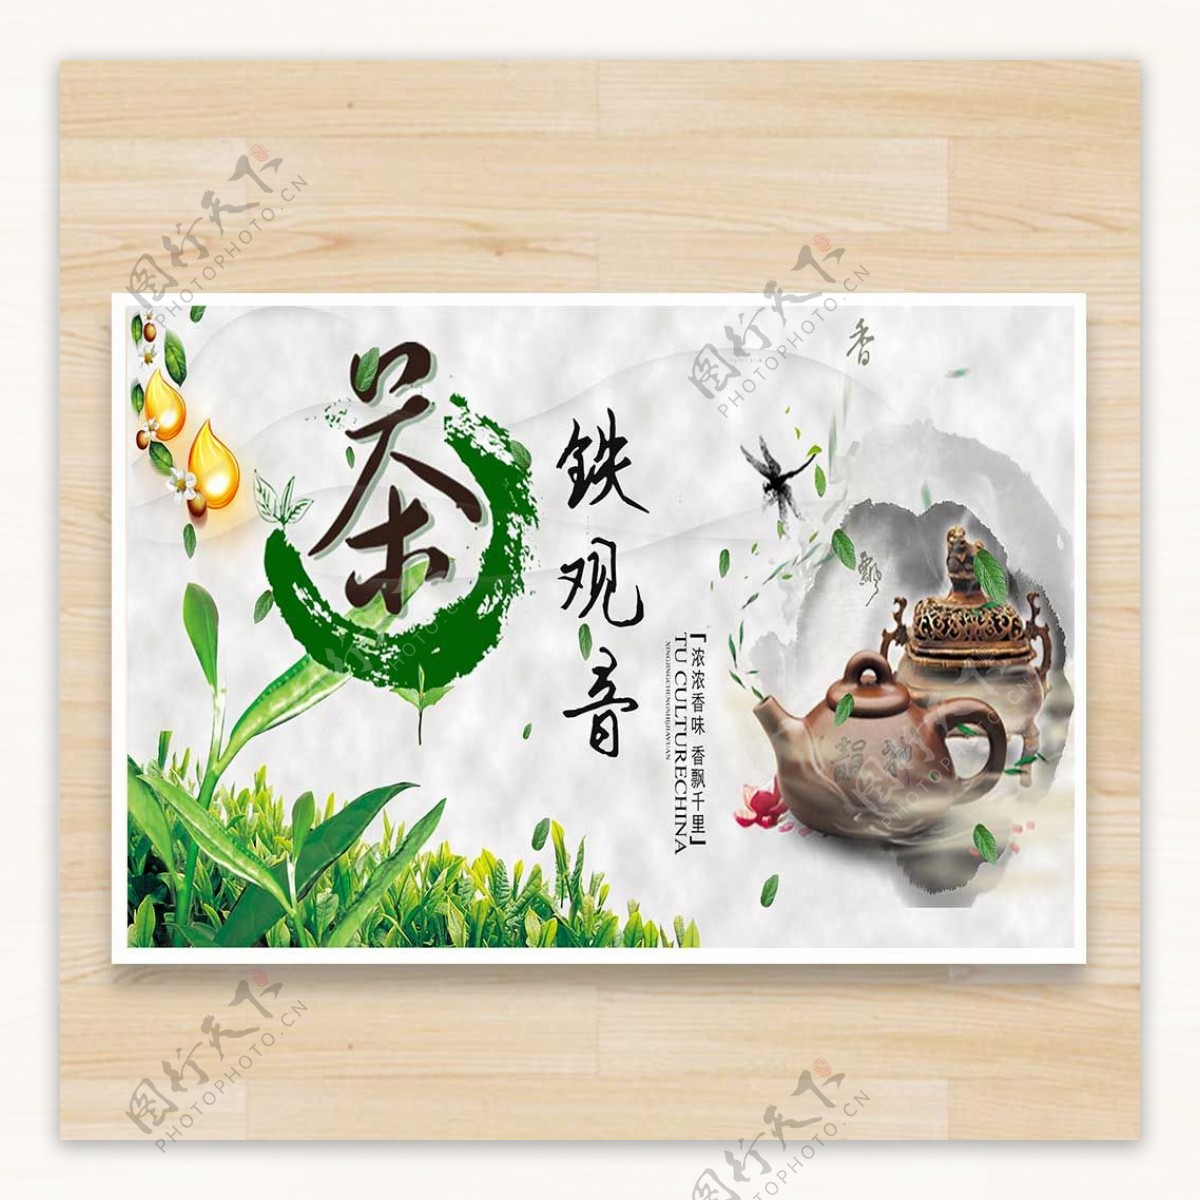 中国茶铁观音海报设计